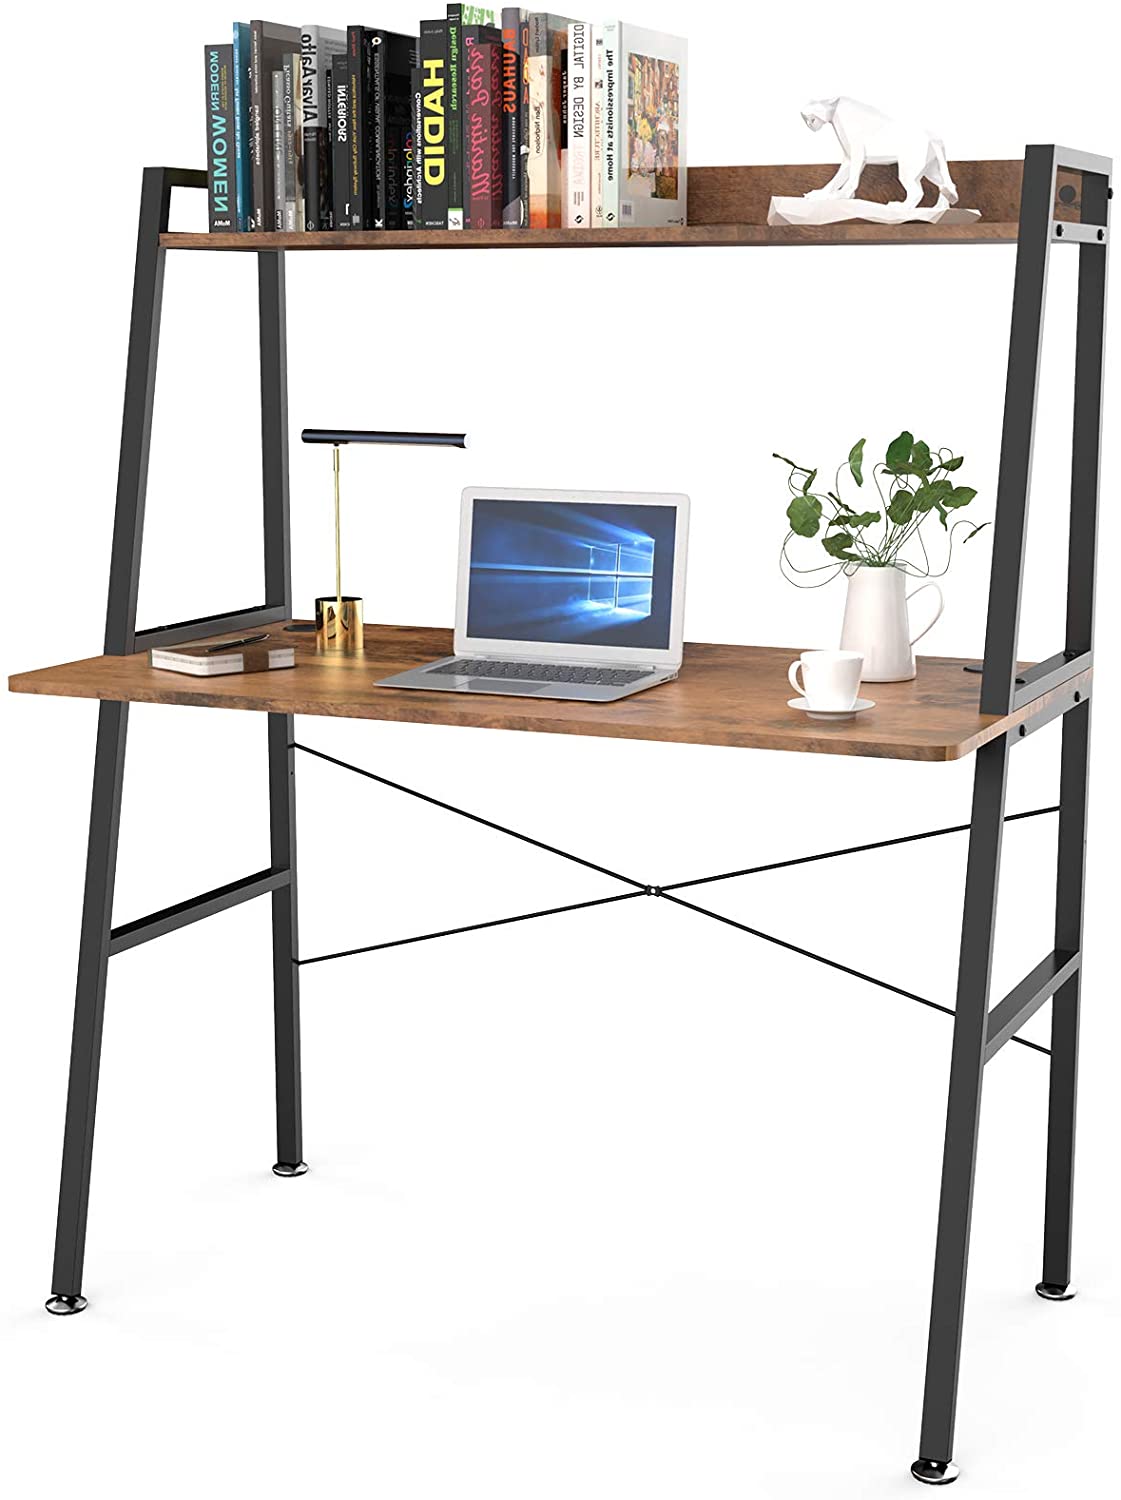 DESIGNA Multi-Functional Leaning/Ladder Desk